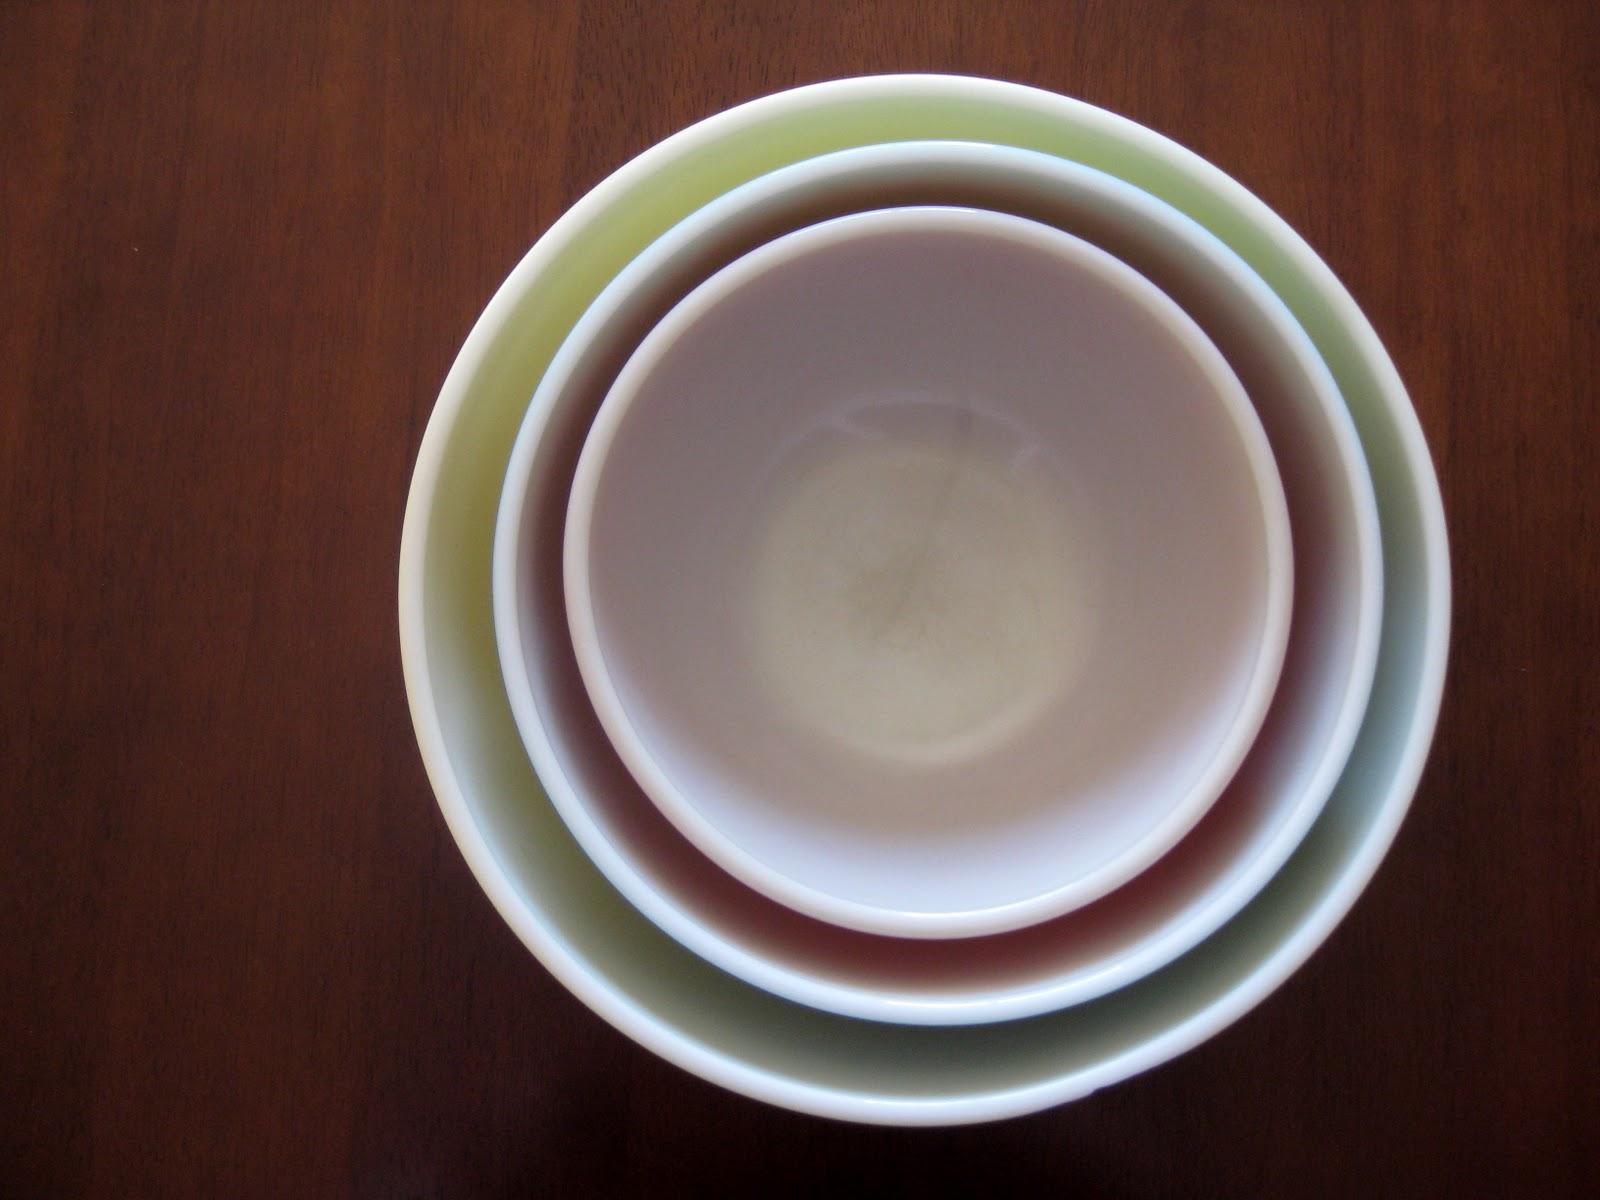 medium teal pyrex bowl and